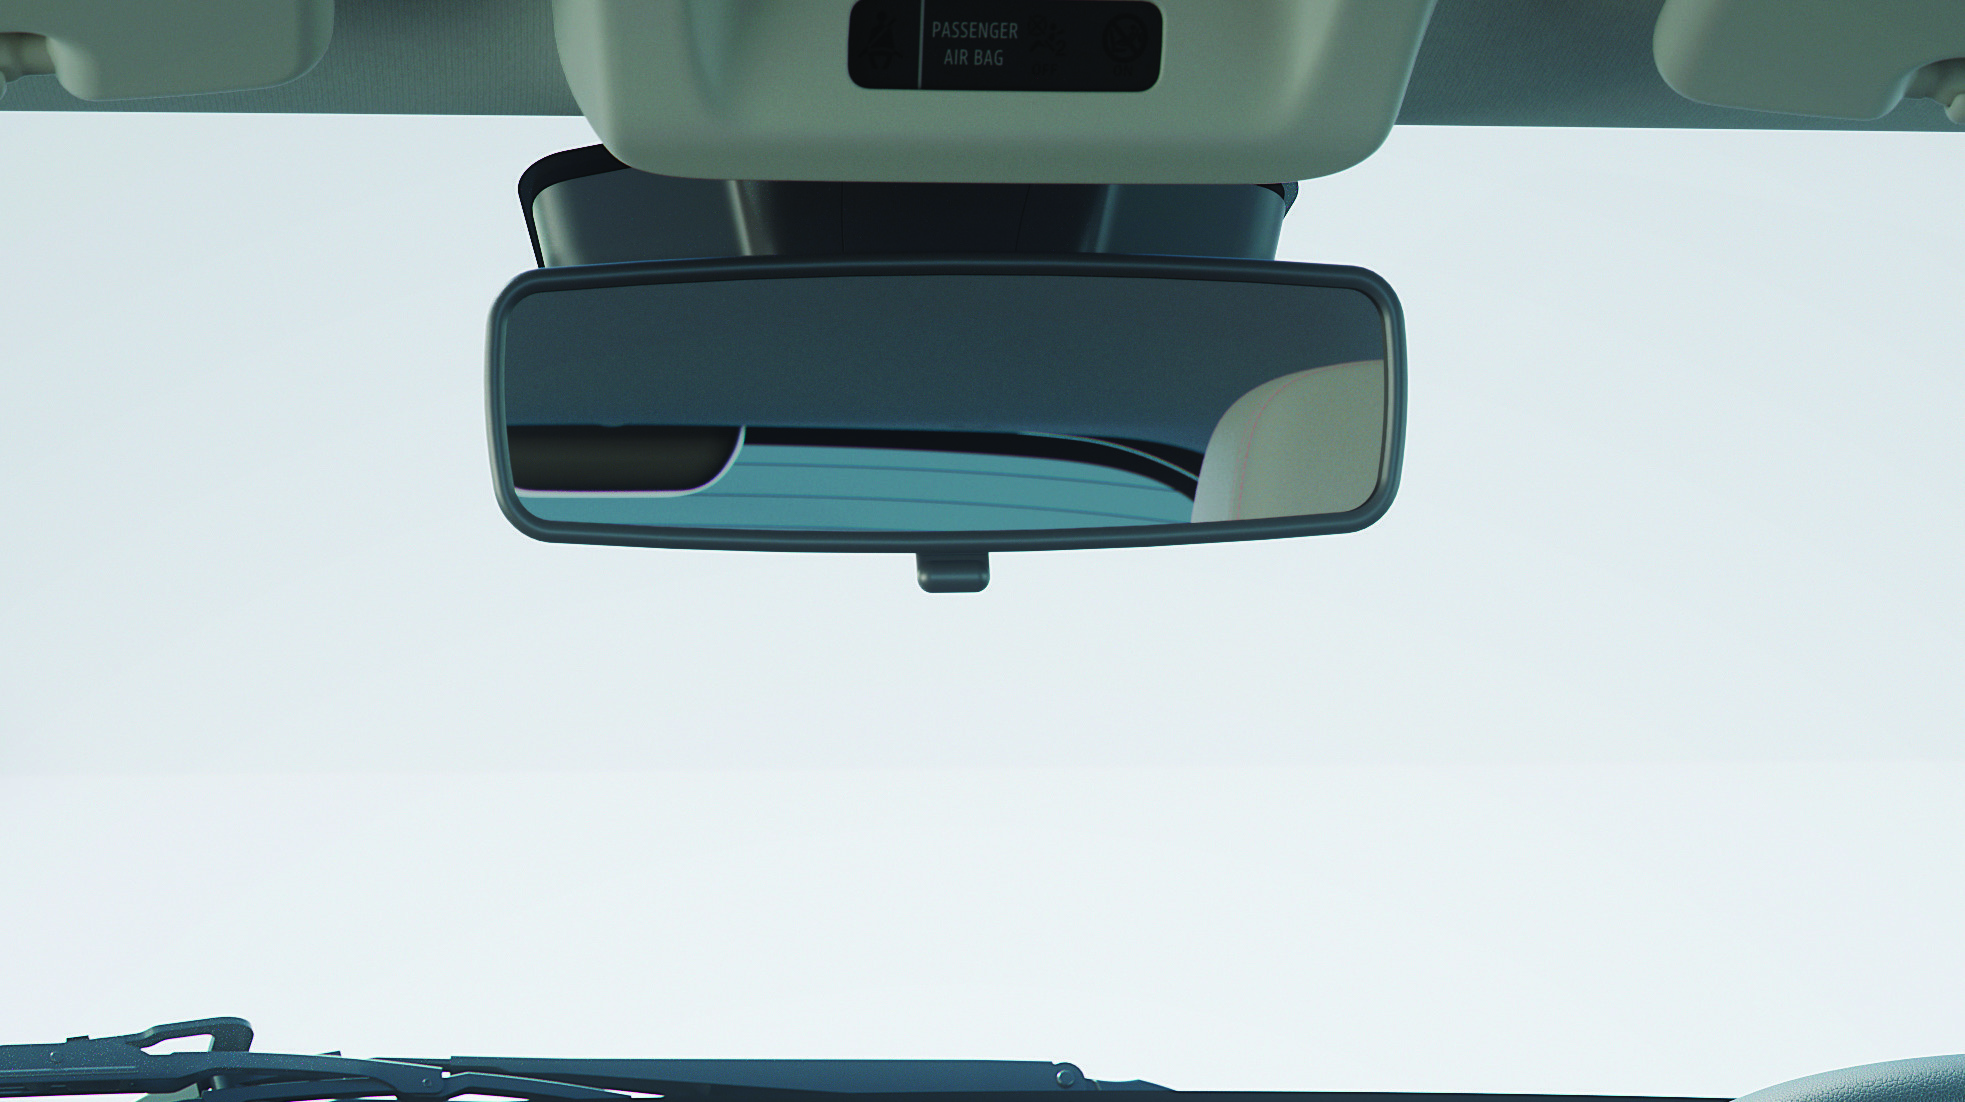 Desconexión Airbag pasajero